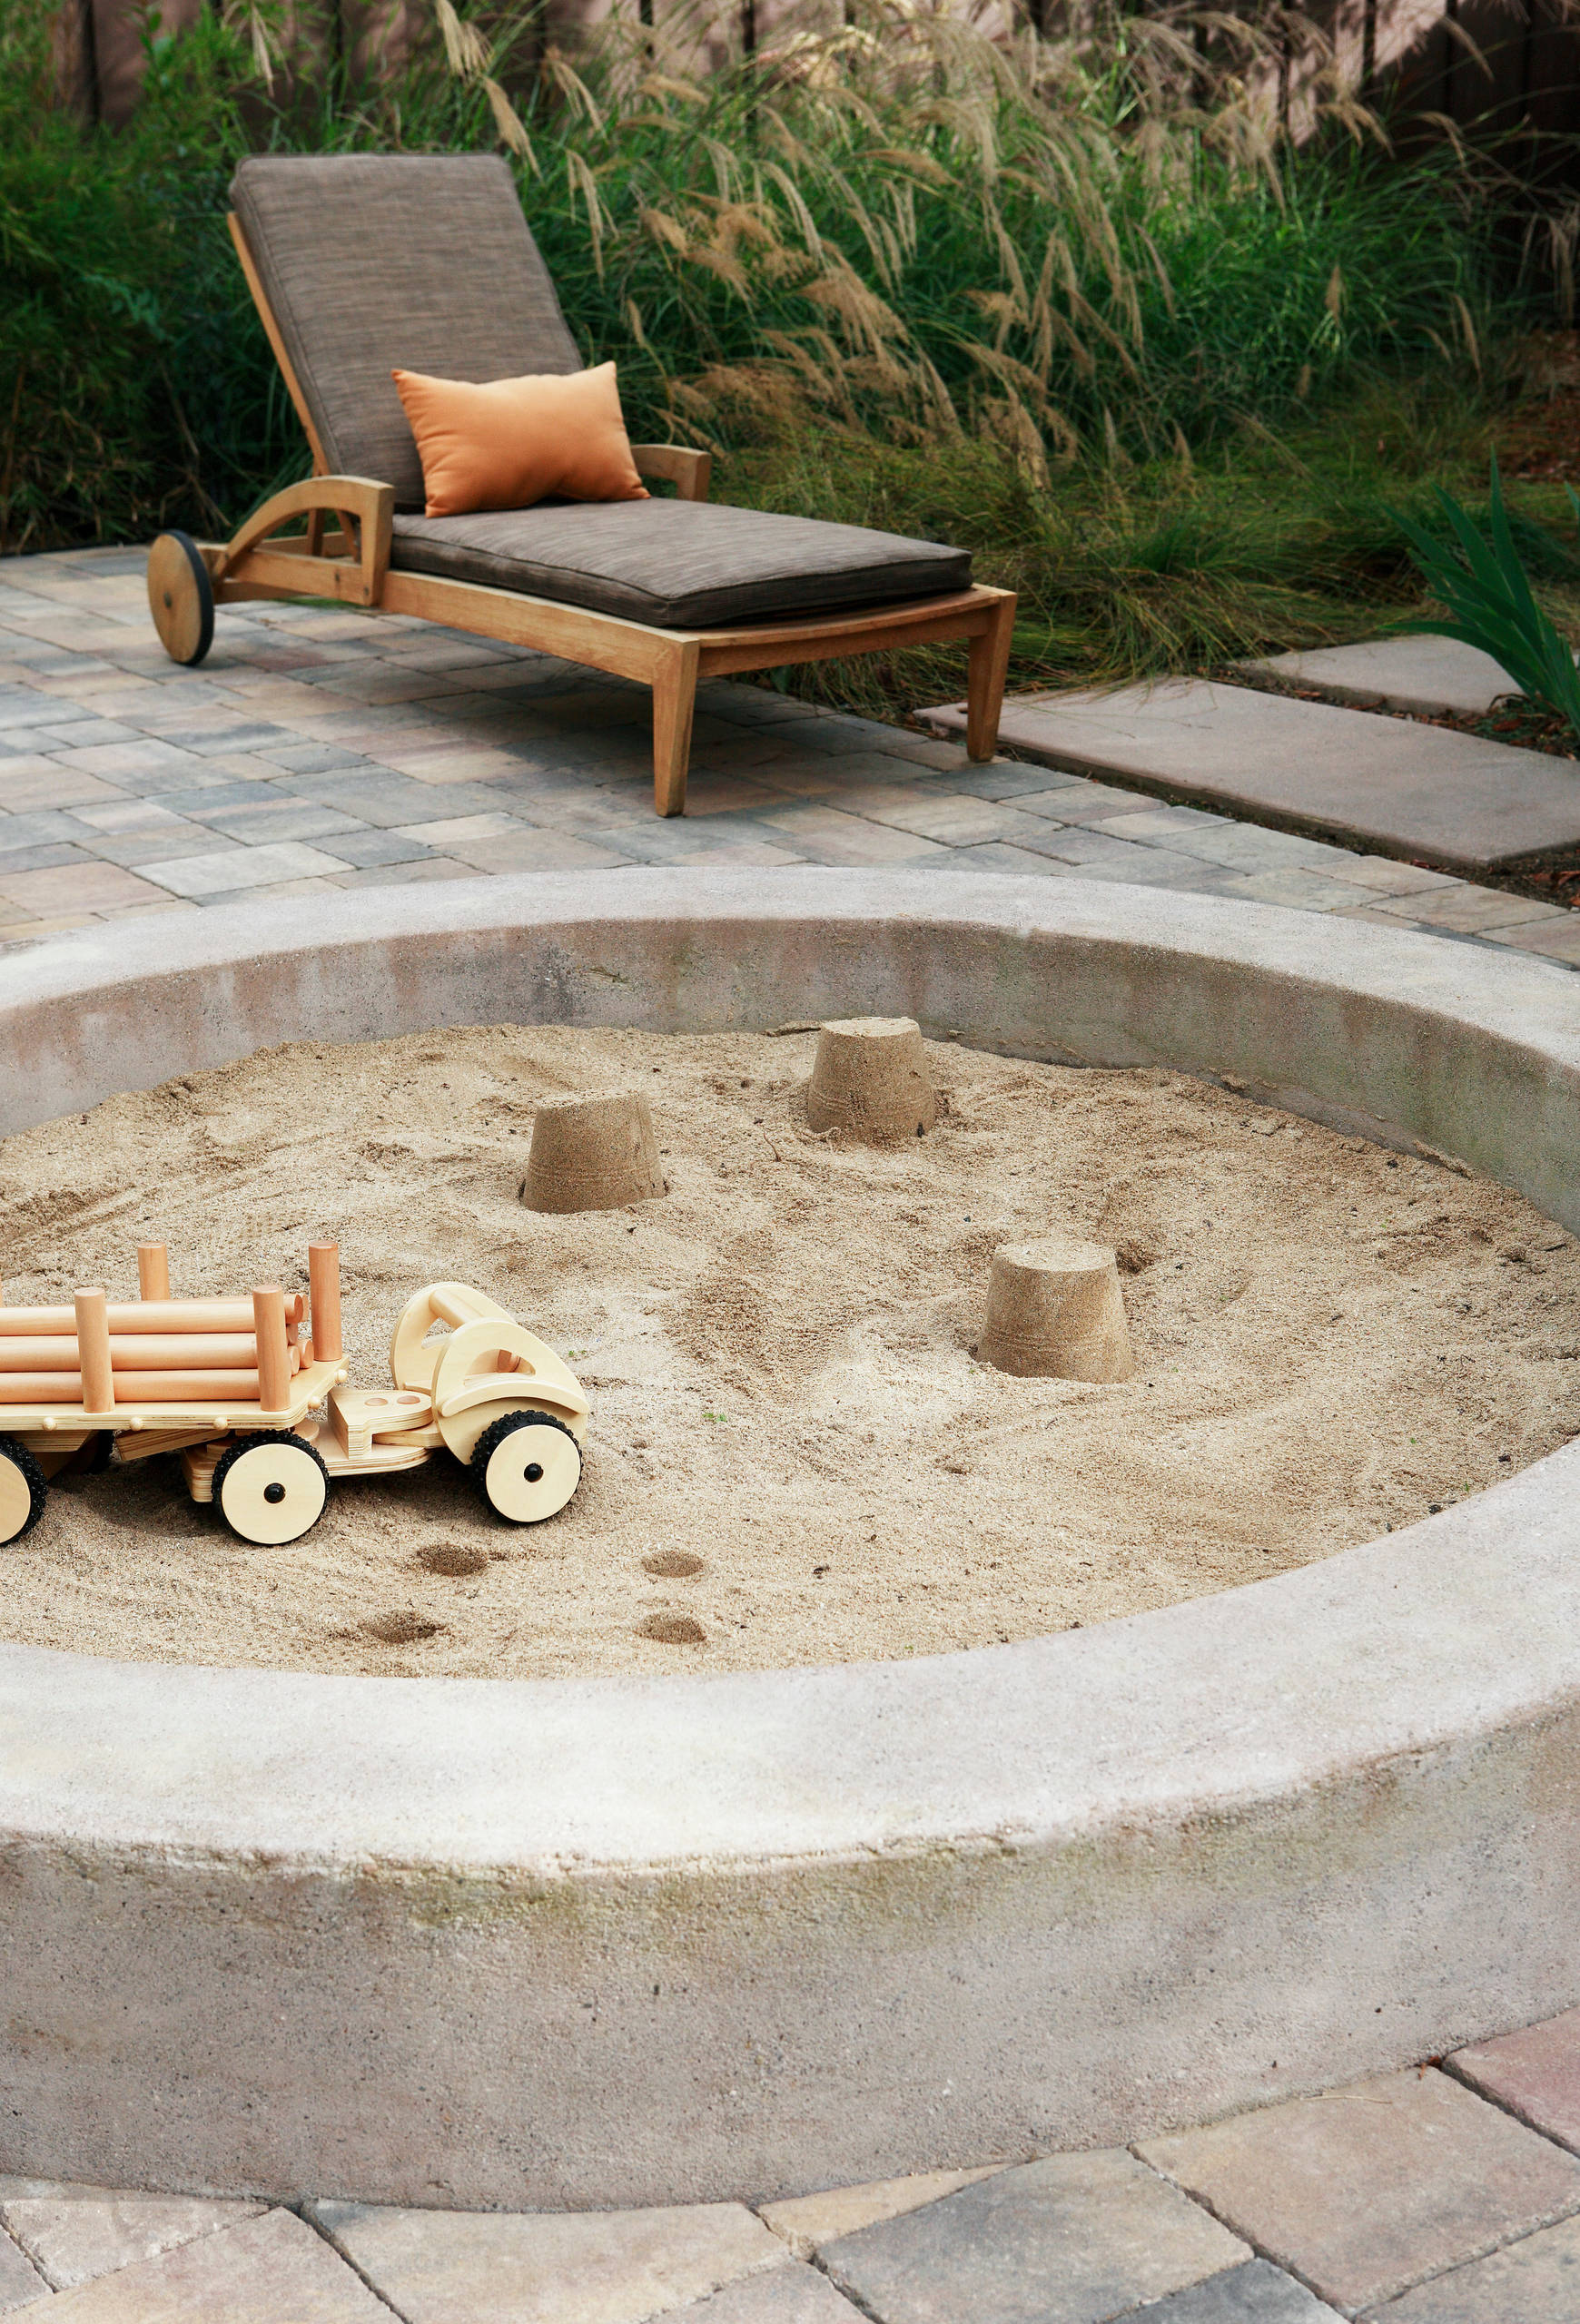 Auf die Schippe, fertig, los! 12 Ideen für Sandkästen im Garten